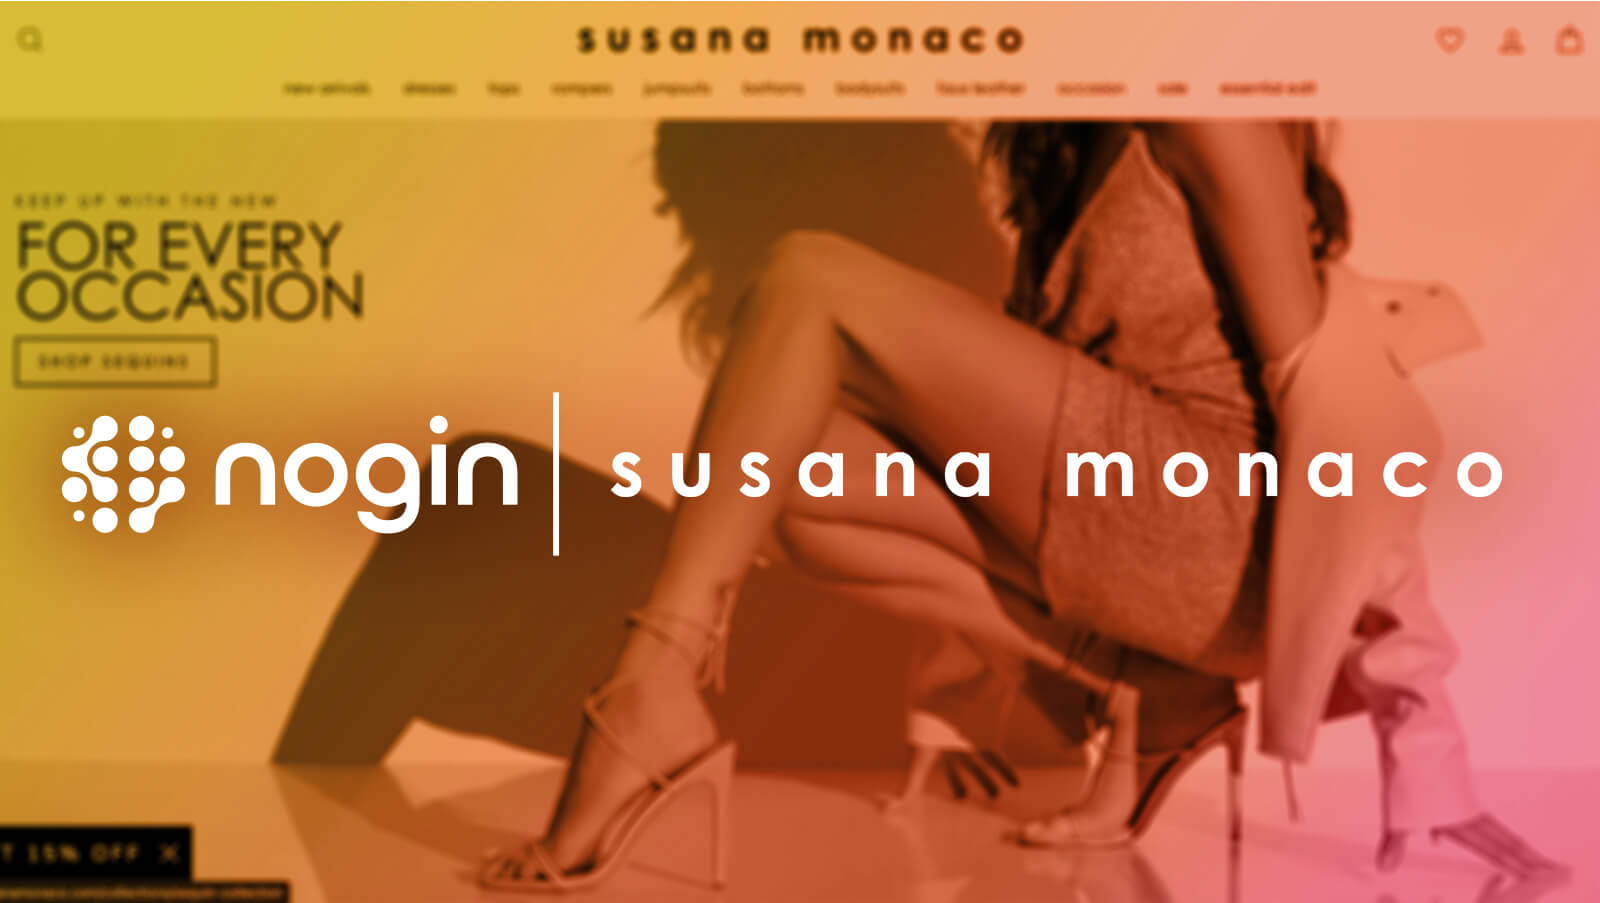 susano monaco client announcement ecommerce